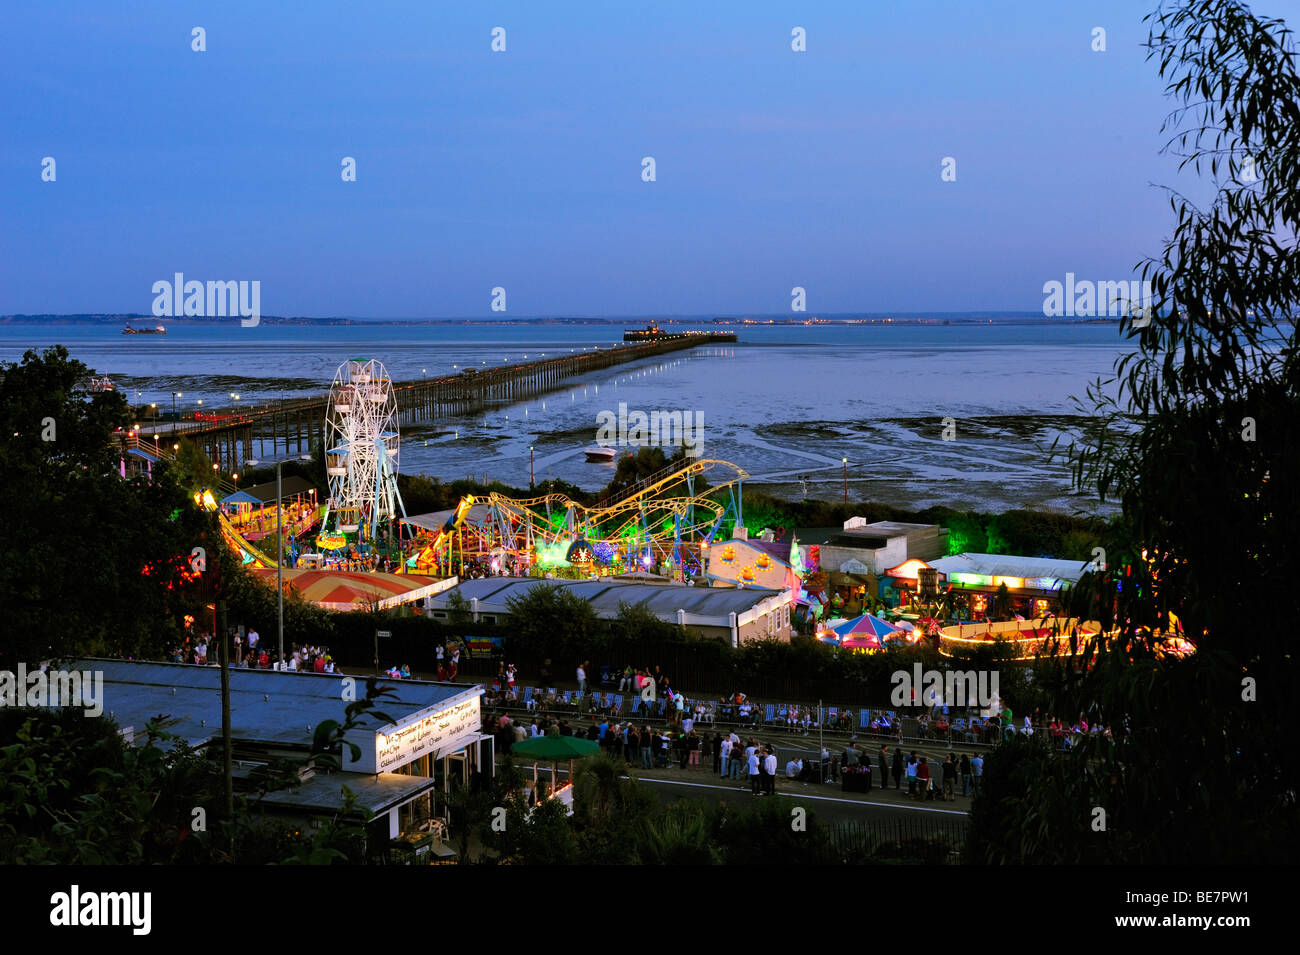 SOUTHEND-ON-SEA, ESSEX, Royaume-Uni - 28 AOÛT 2009 : vue de la jetée Southend et de l'île Adventure la nuit avec des foules attendant le défilé de carnaval aux flambeaux Banque D'Images